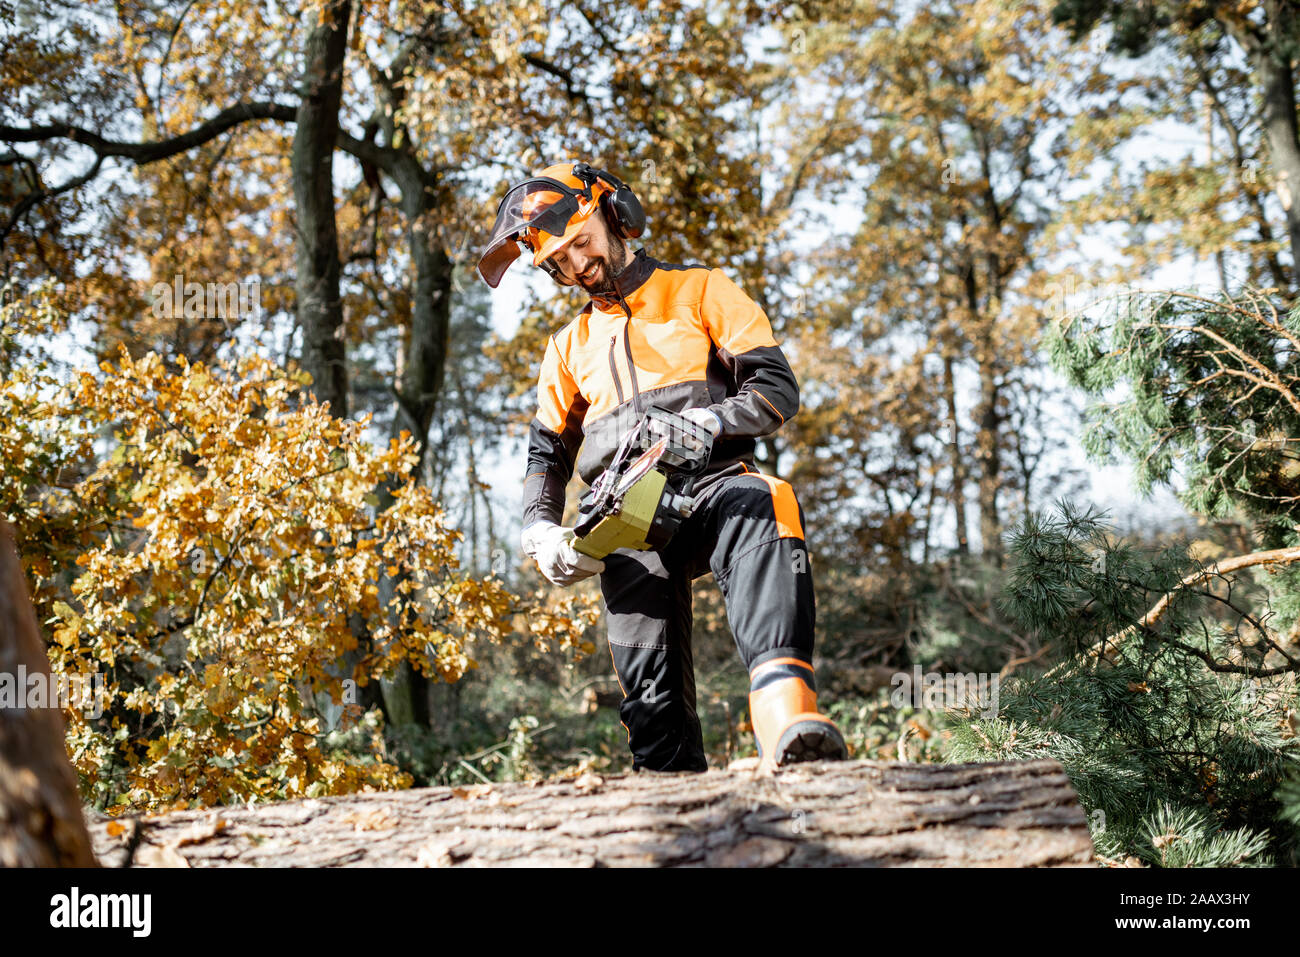 A piena lunghezza Ritratto di un professionista lumberman in indumenti da lavoro protettiva registrazione con chainsaw nella pineta Foto Stock